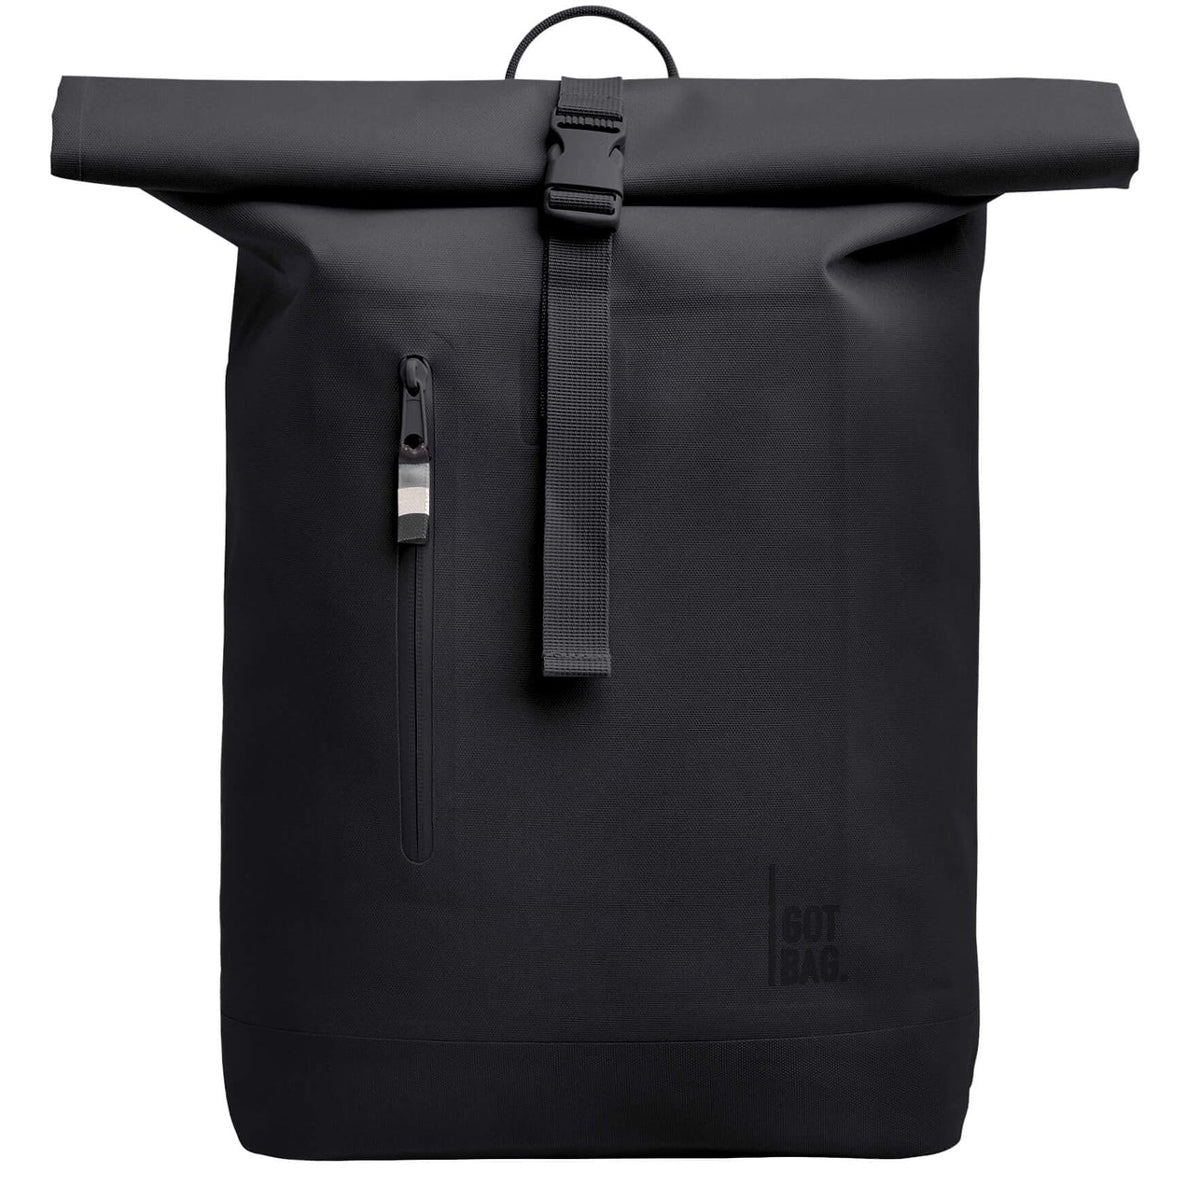 Got Bag Rolltop Lite Backpack - Black Monochrome image 1